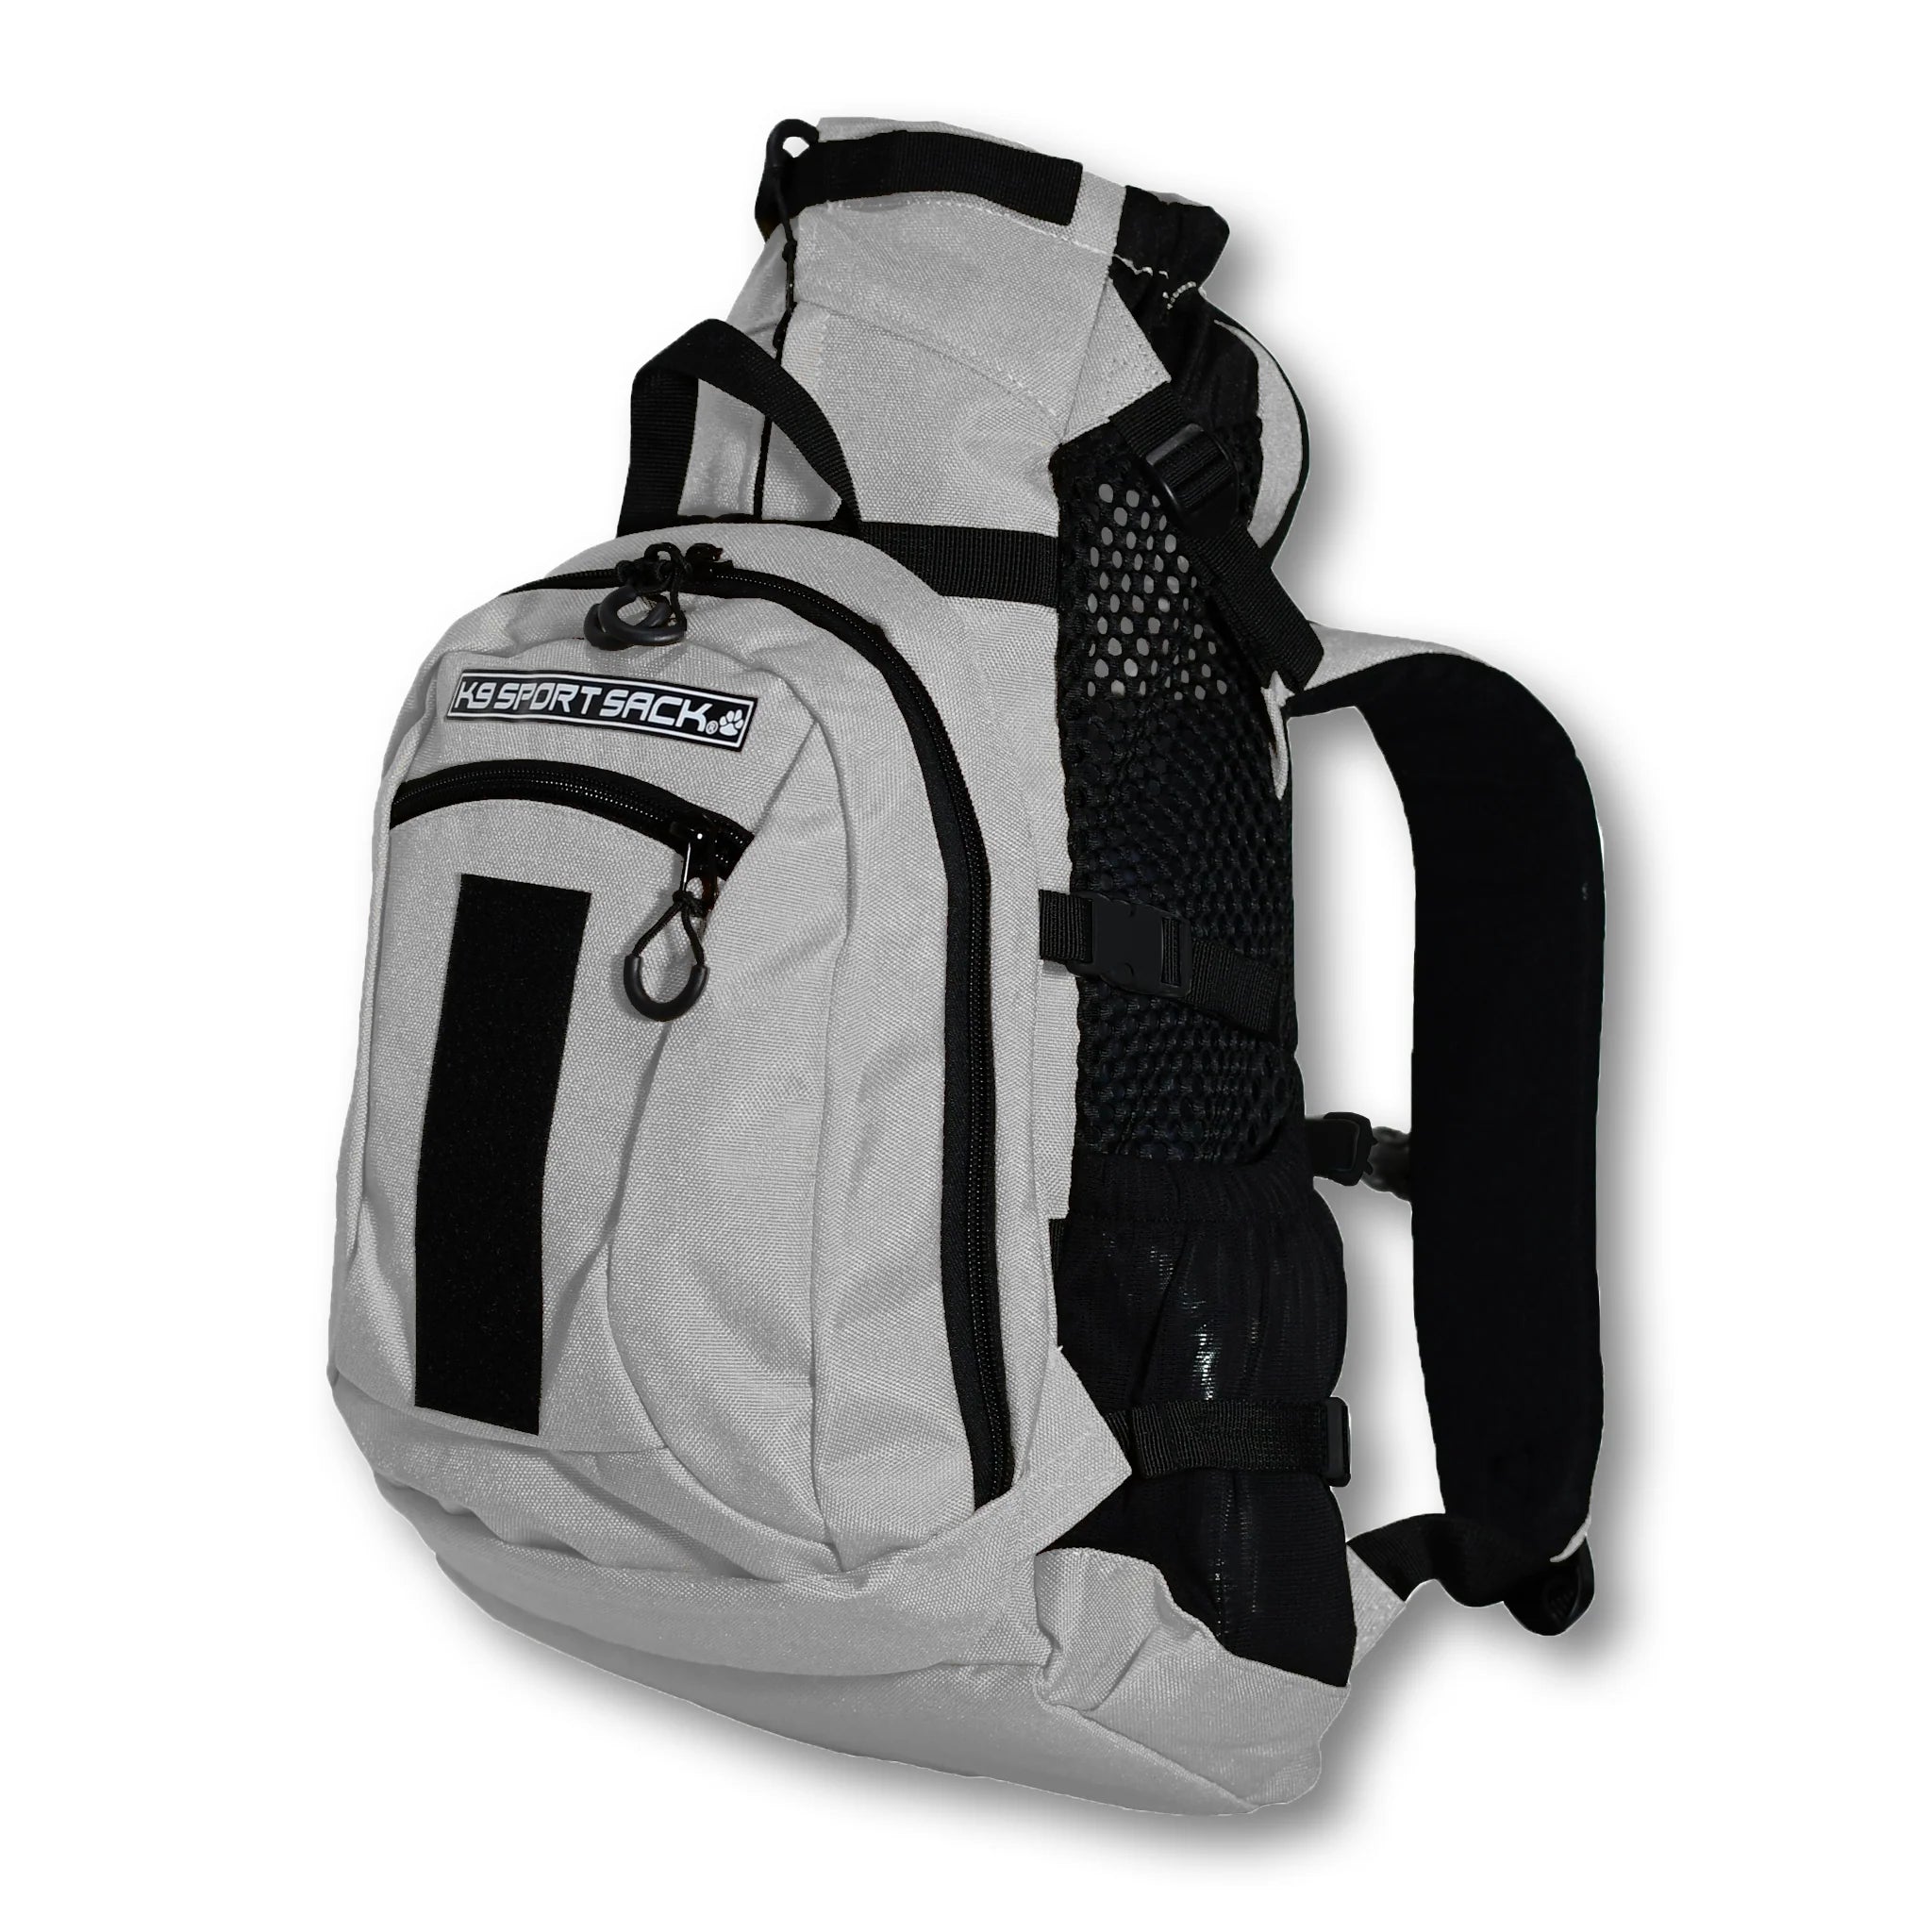 K9 Sport Sack Knavigate Backpack Pet Carrier, Large Grey